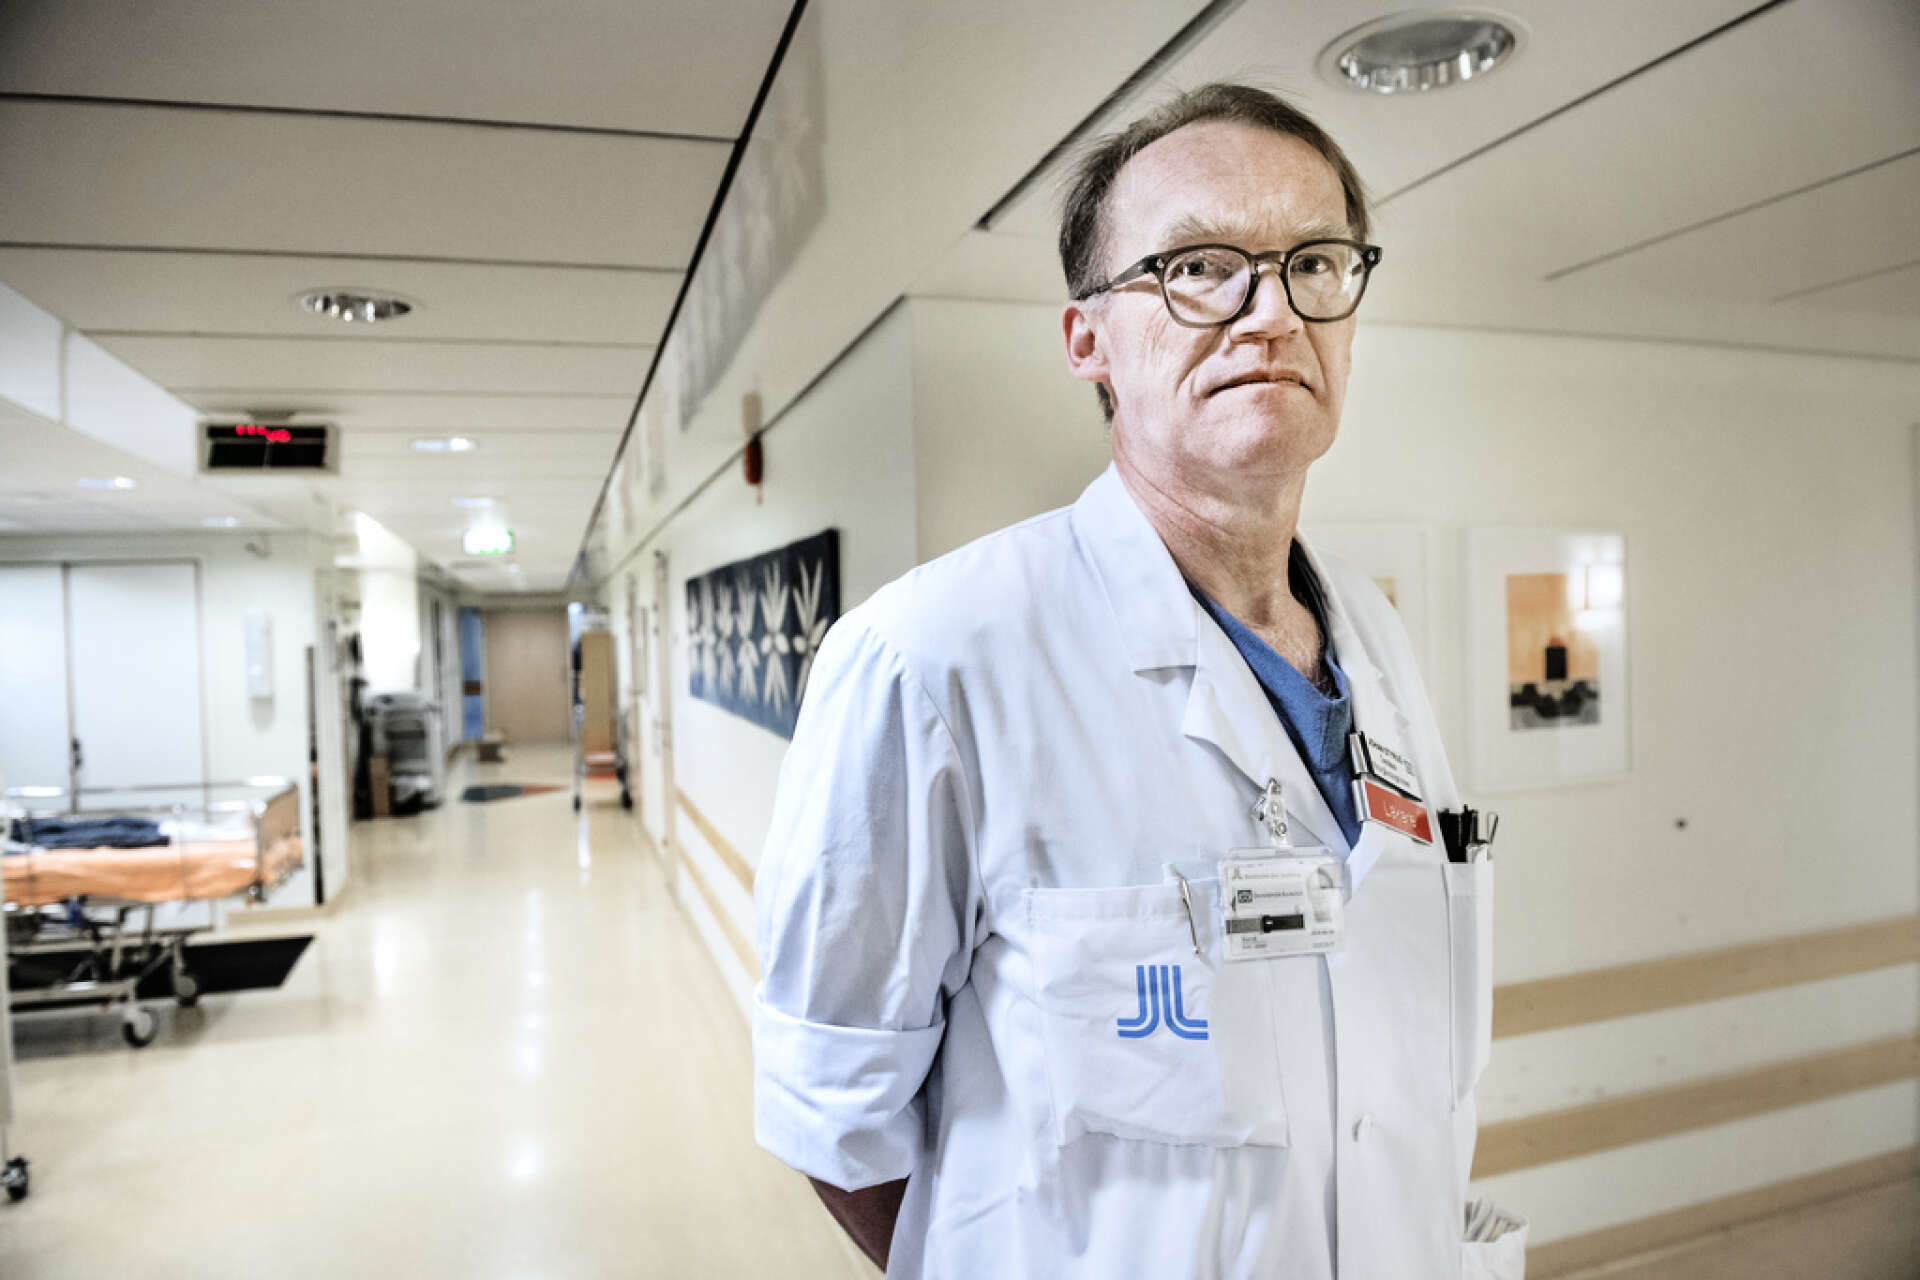 Flera läkare har själva intensivvårdats efter att de blivit smittade på jobbet, säger Johan Styrud, ordförande för Läkarföreningen i Stockholm och överläkare på Danderyds sjukhus. Arkivbild.